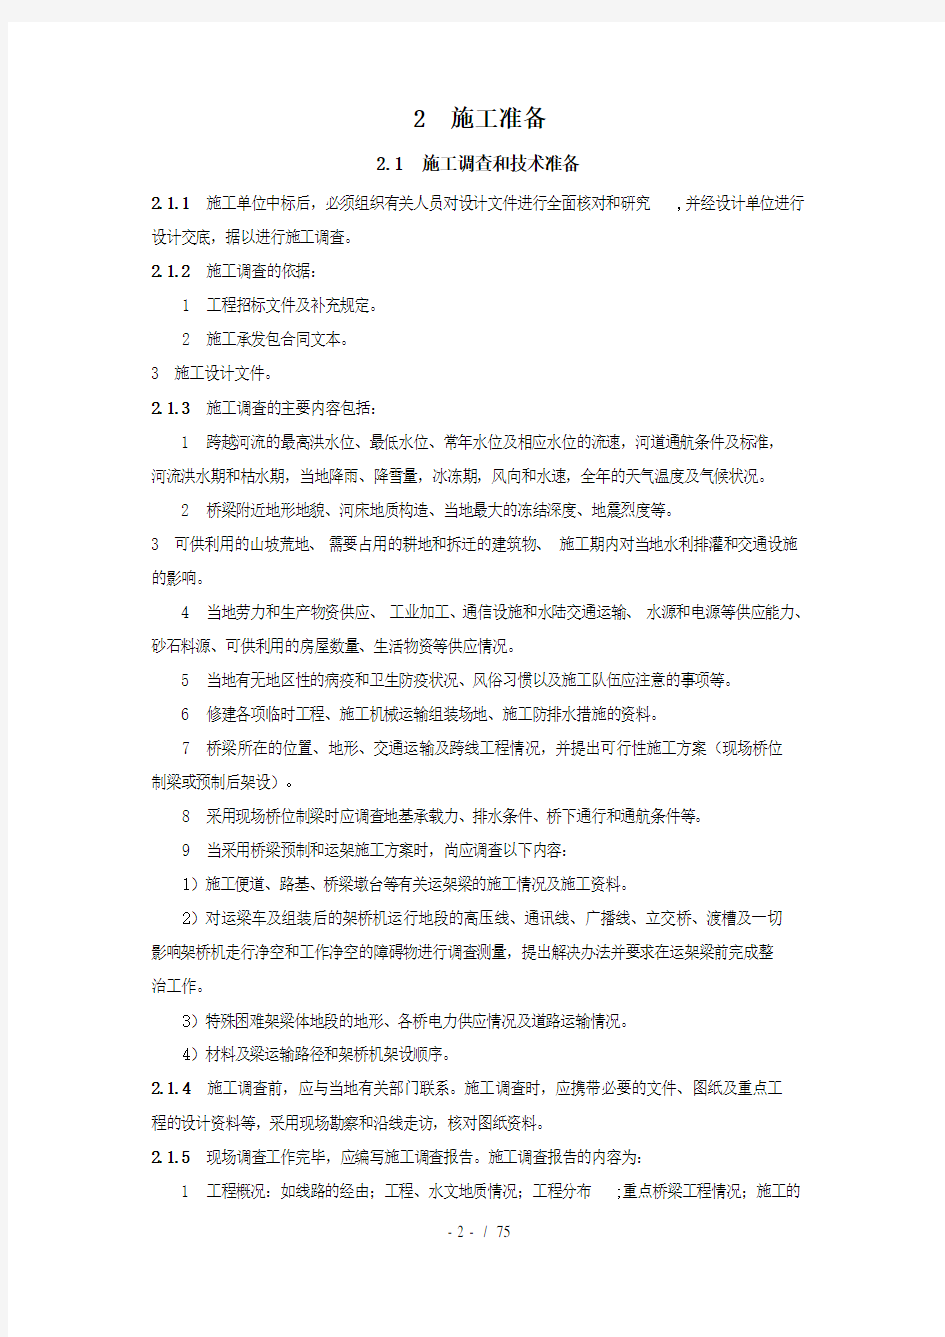 京沪高速铁路桥涵工程施工暂行规定